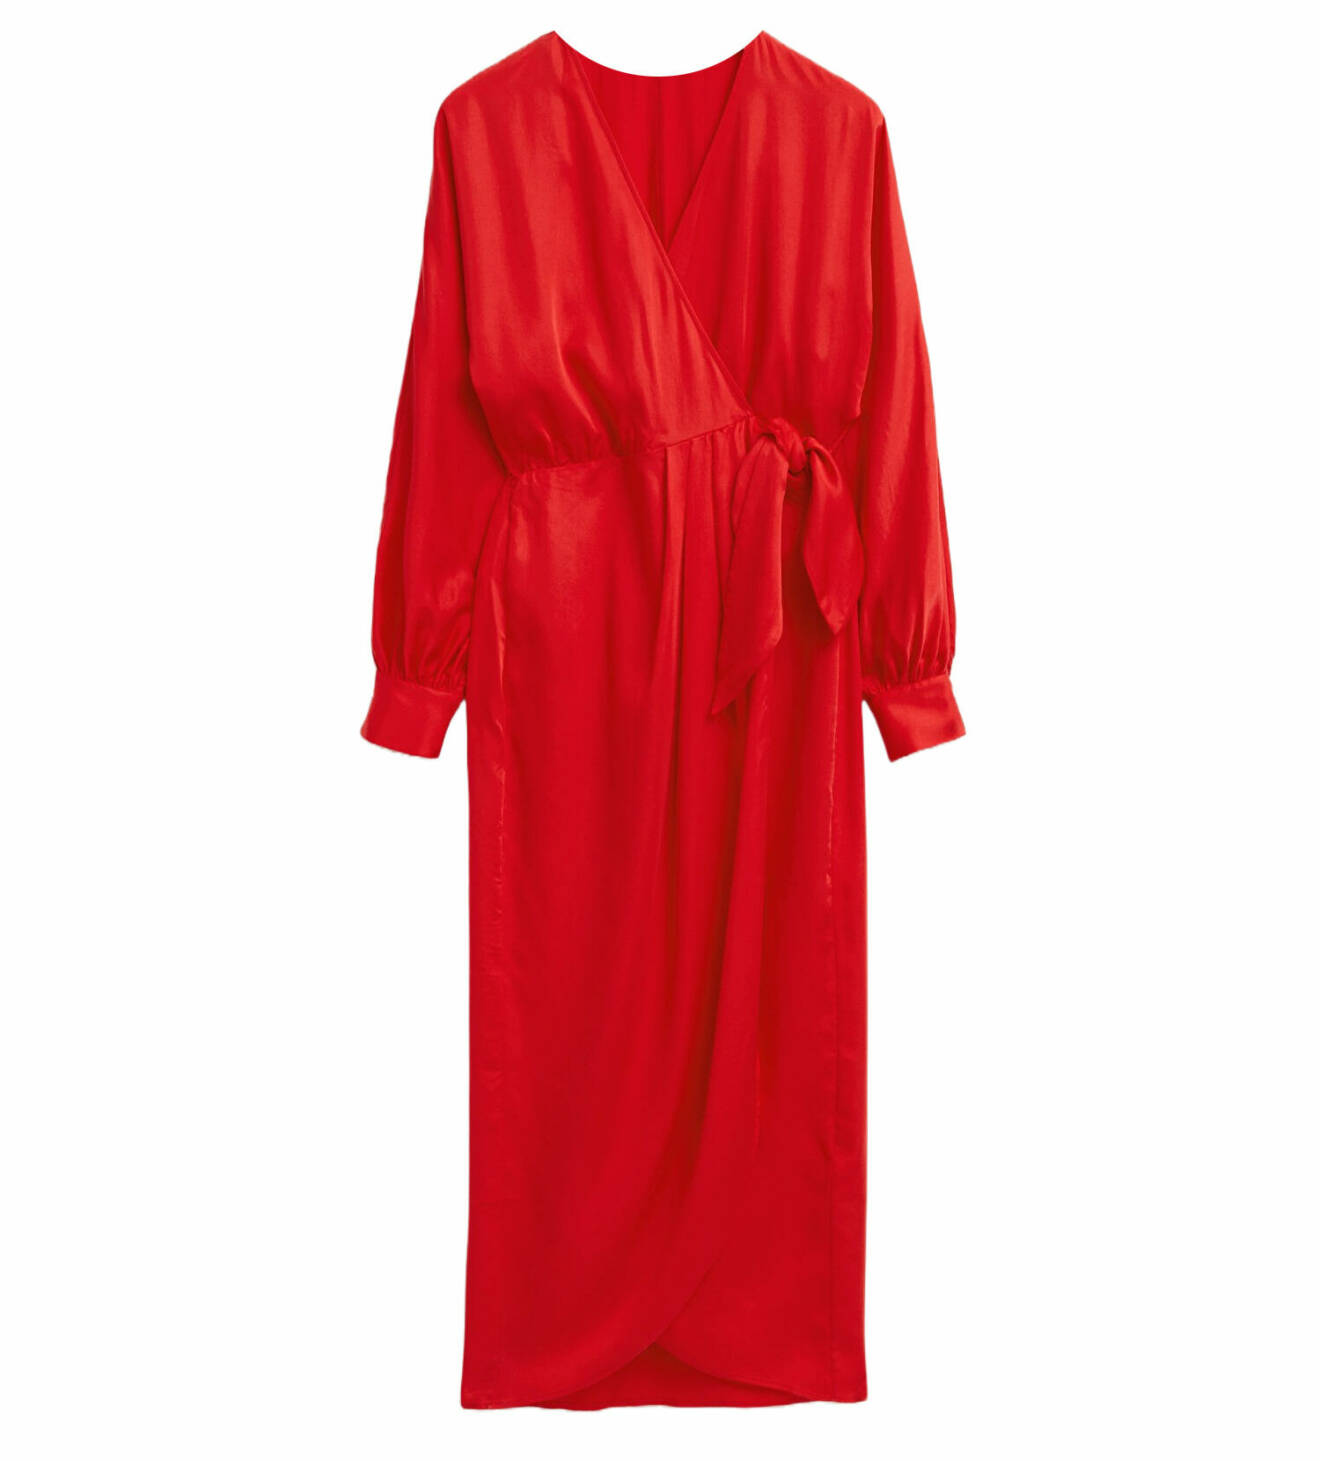 omlottklänning i röd färg